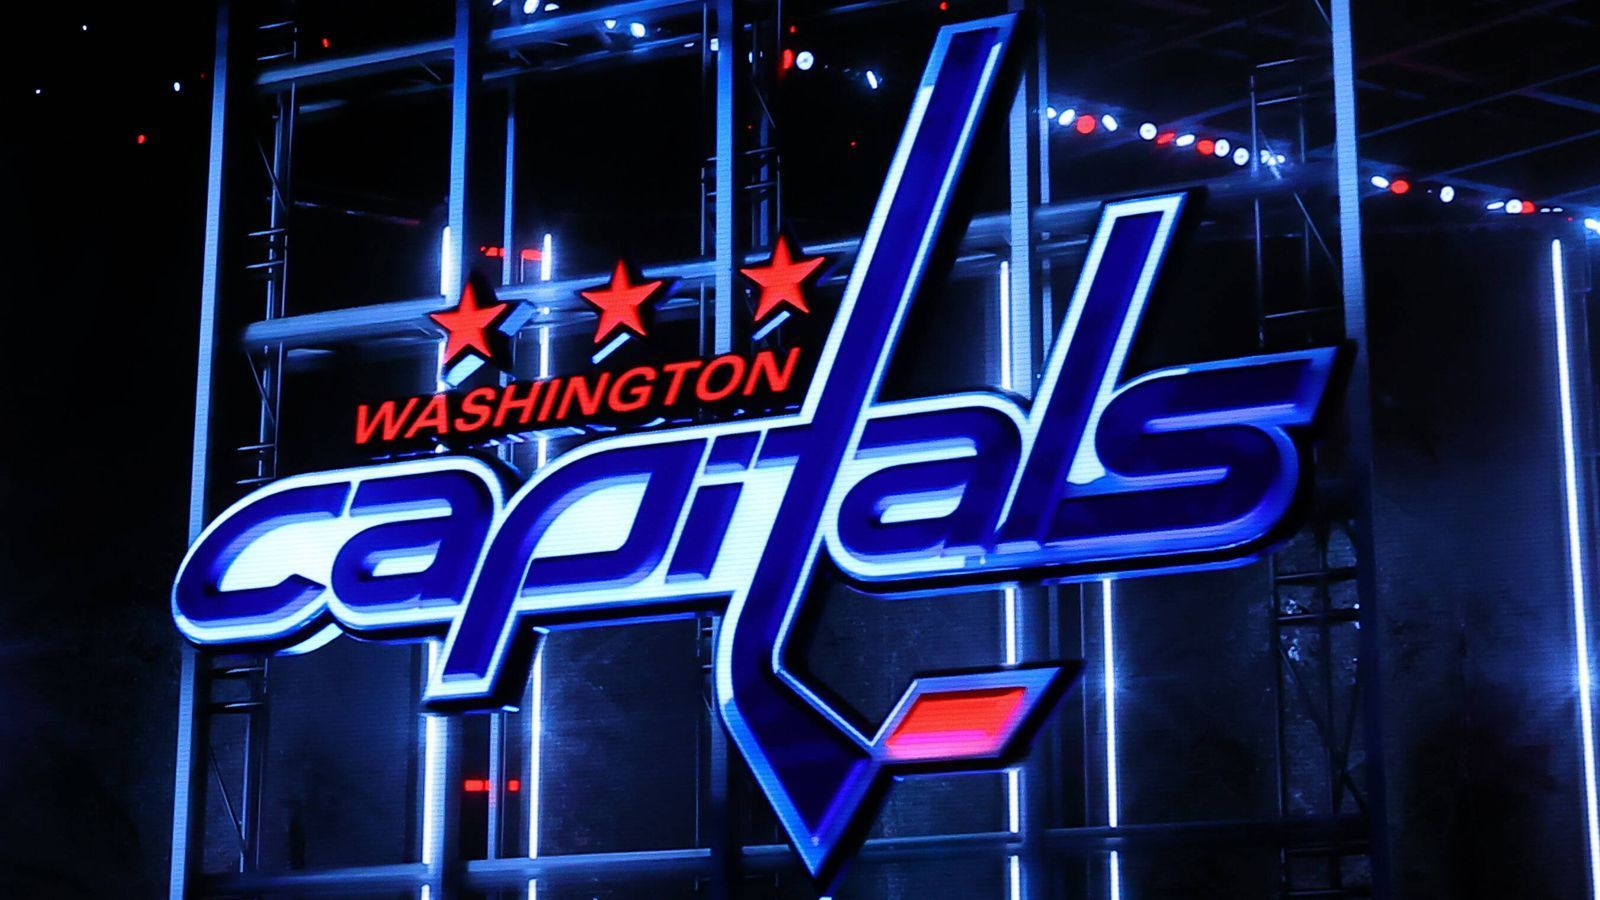 
                <strong>Washington Capitals</strong><br>
                Washington D.C. ist die Hauptstadt der USA. Deshalb war Capitals (Hauptstädter) der logische Name für das Eishockey-Team.
              